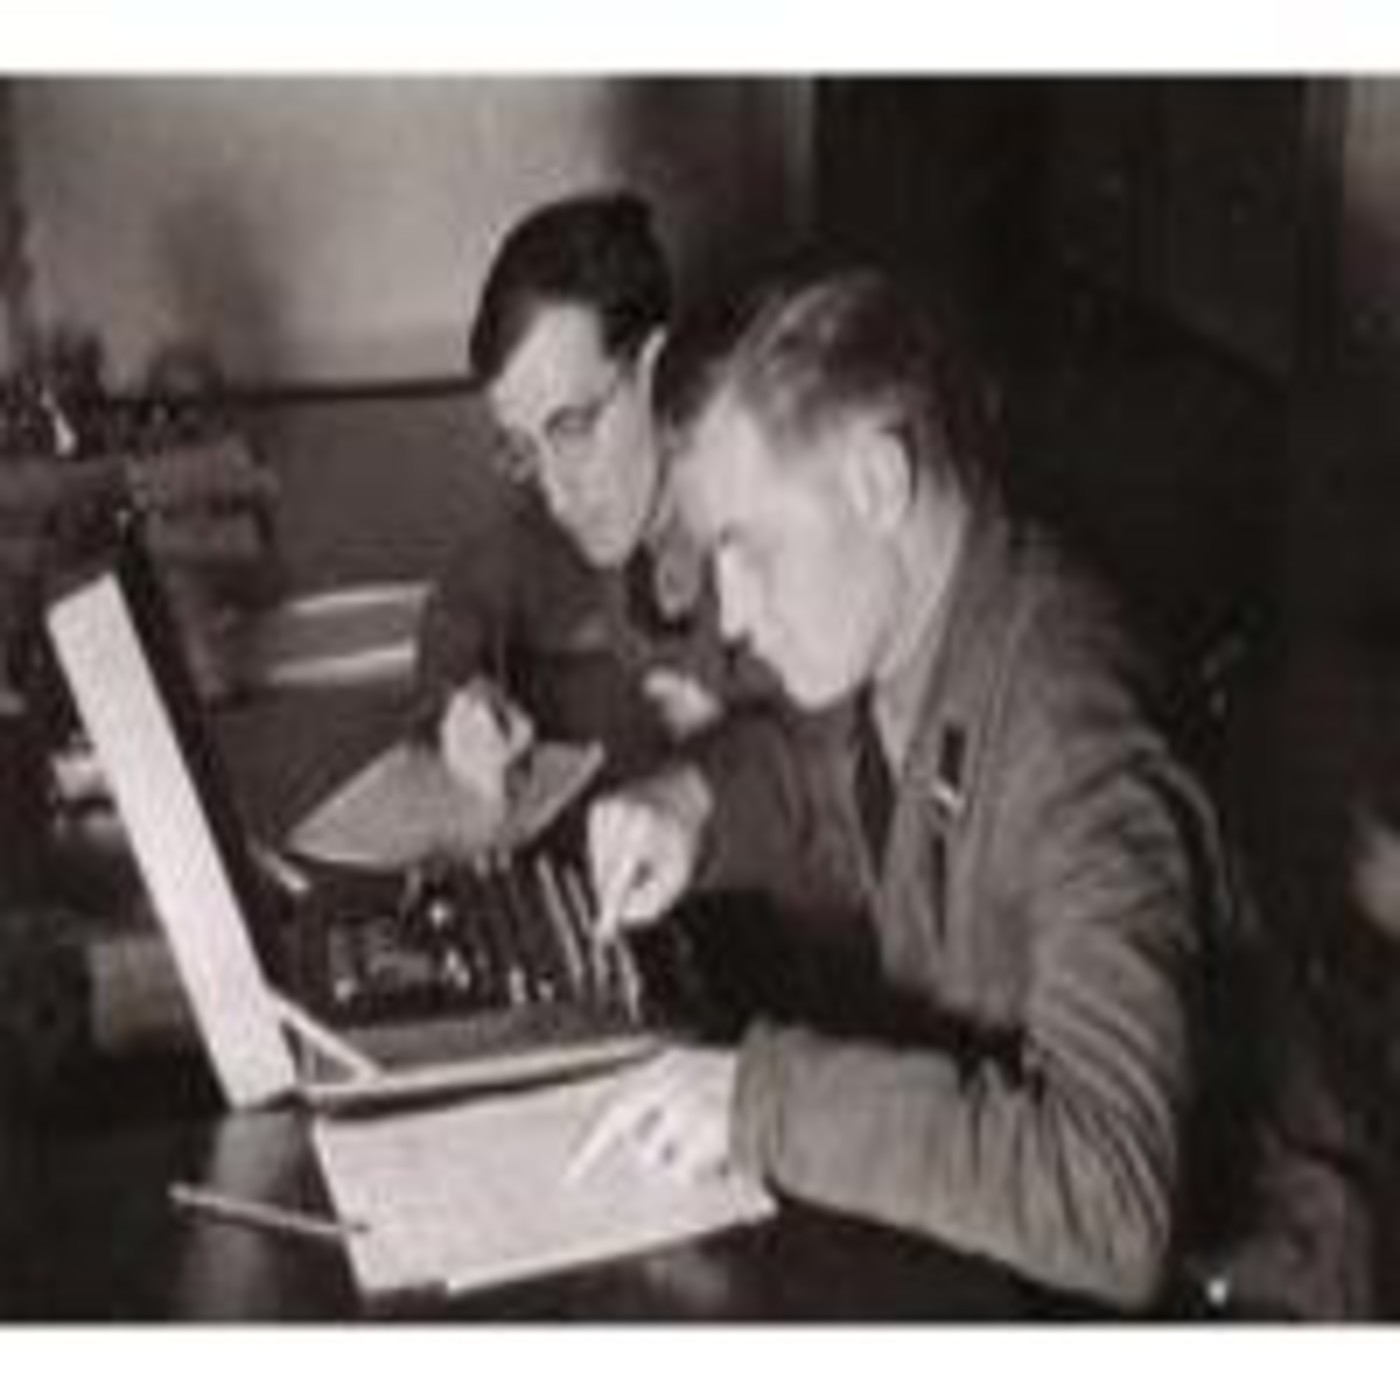 Preview Detectives de lo Insólito 12: Desarrollo y evolución tecnológica en la II Guerra Mundial